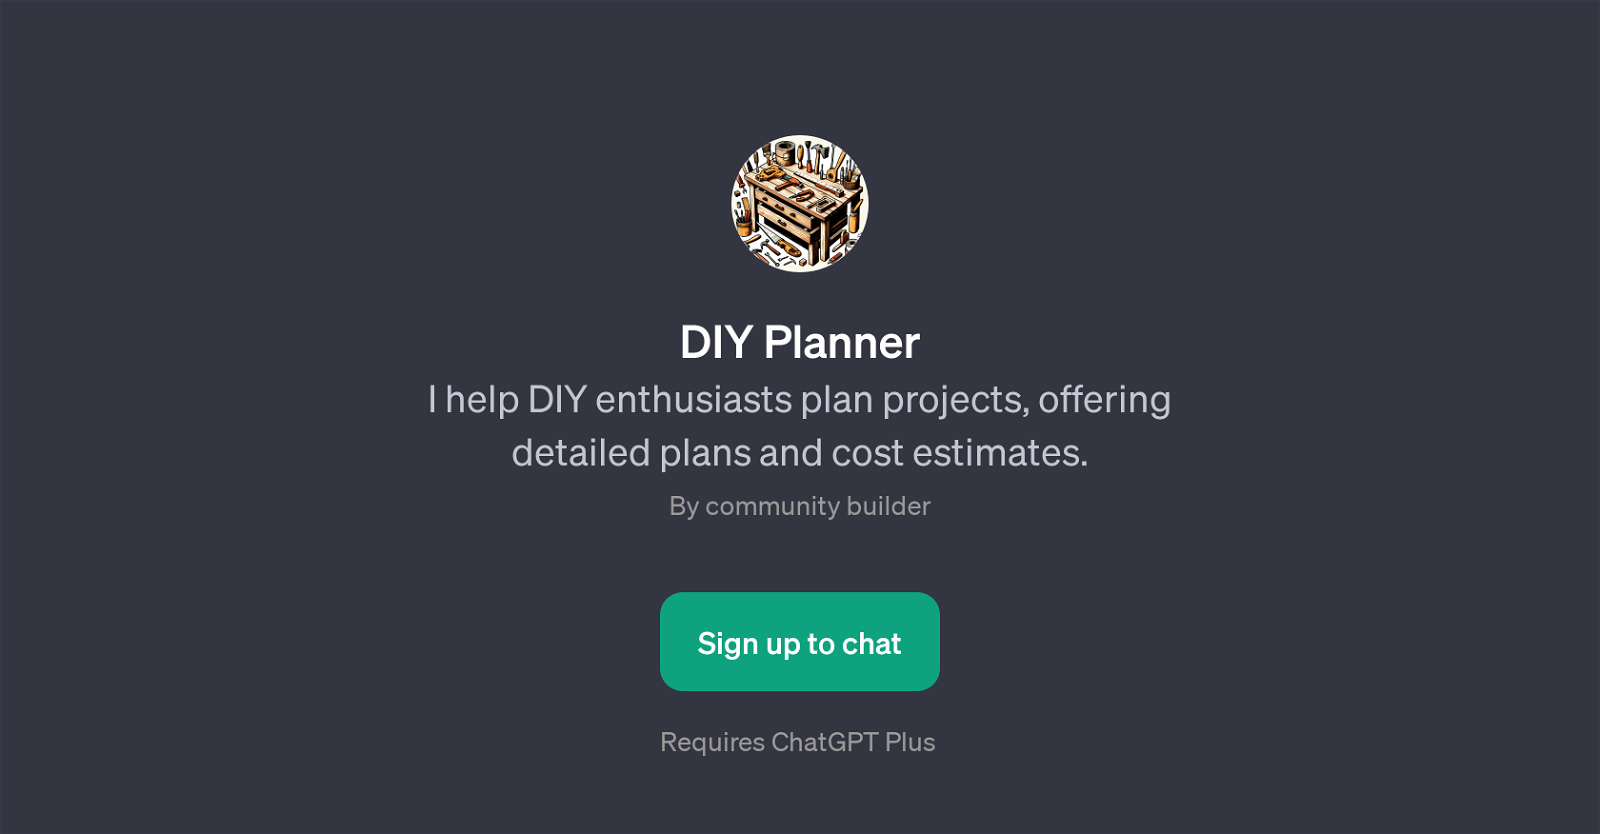 DIY Planner website